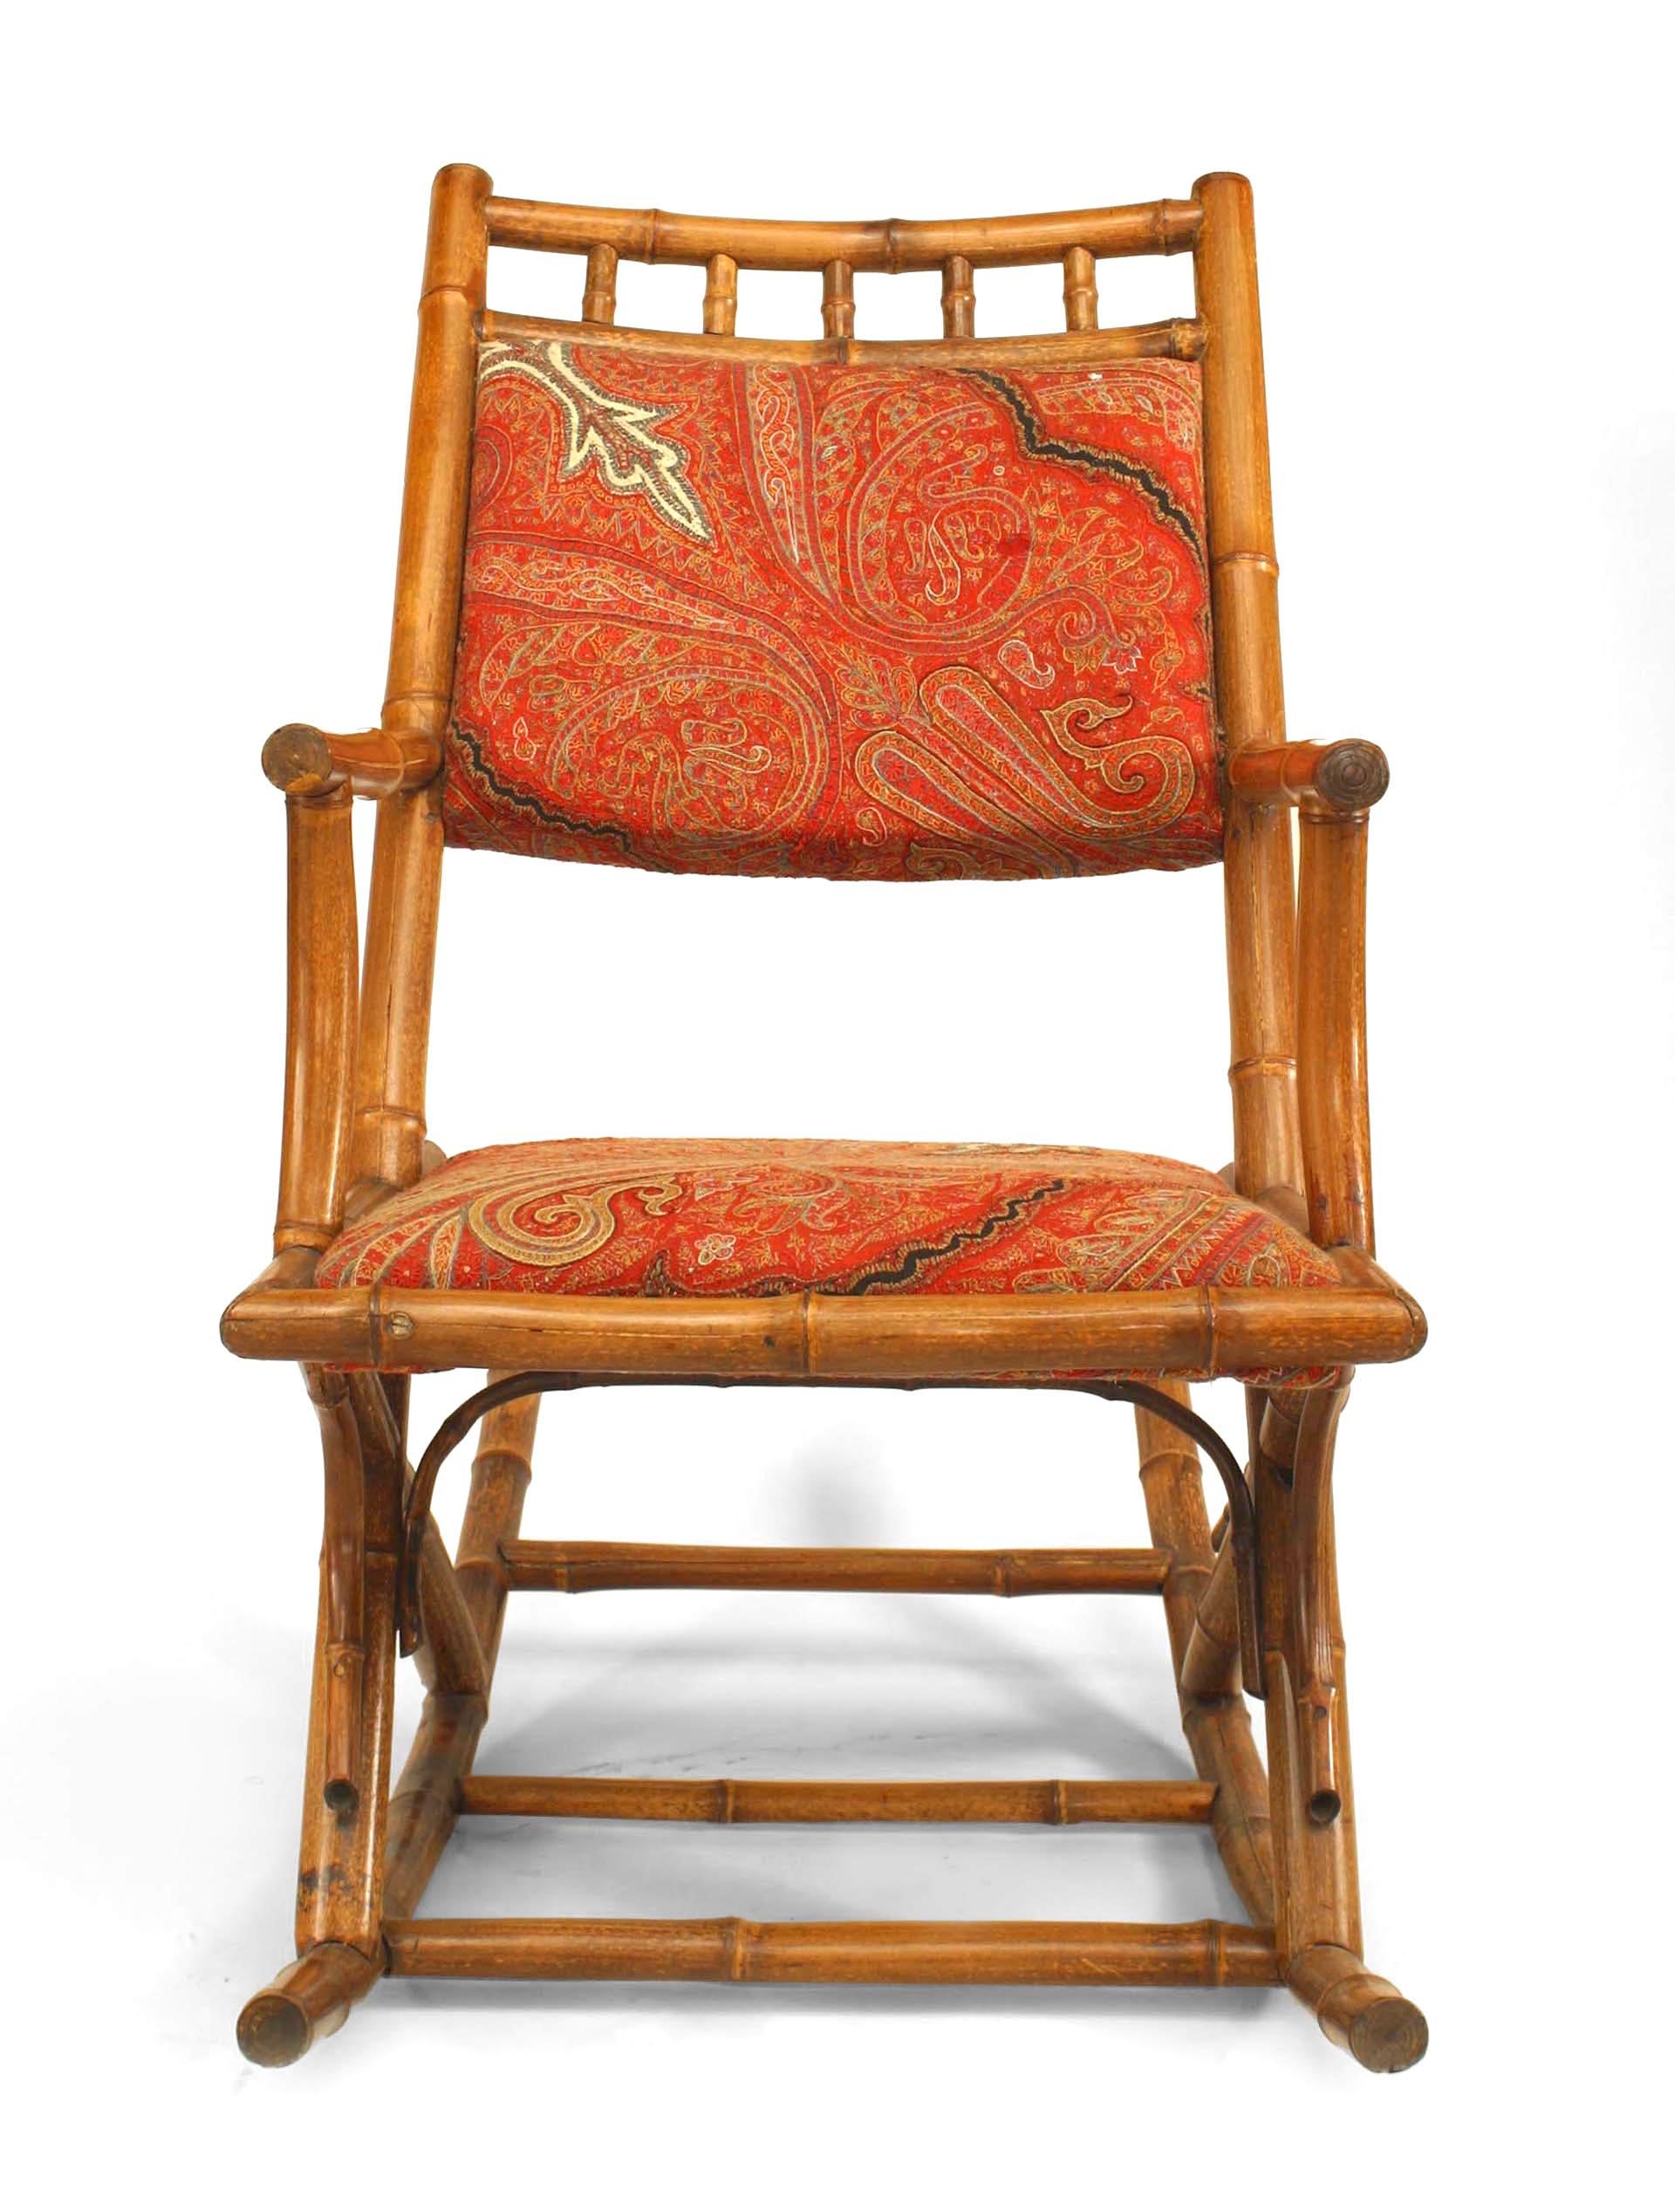 Französischer viktorianischer Bambus-Schaukelstuhl mit paisley-gepolstertem Sitz und Rückenlehne
